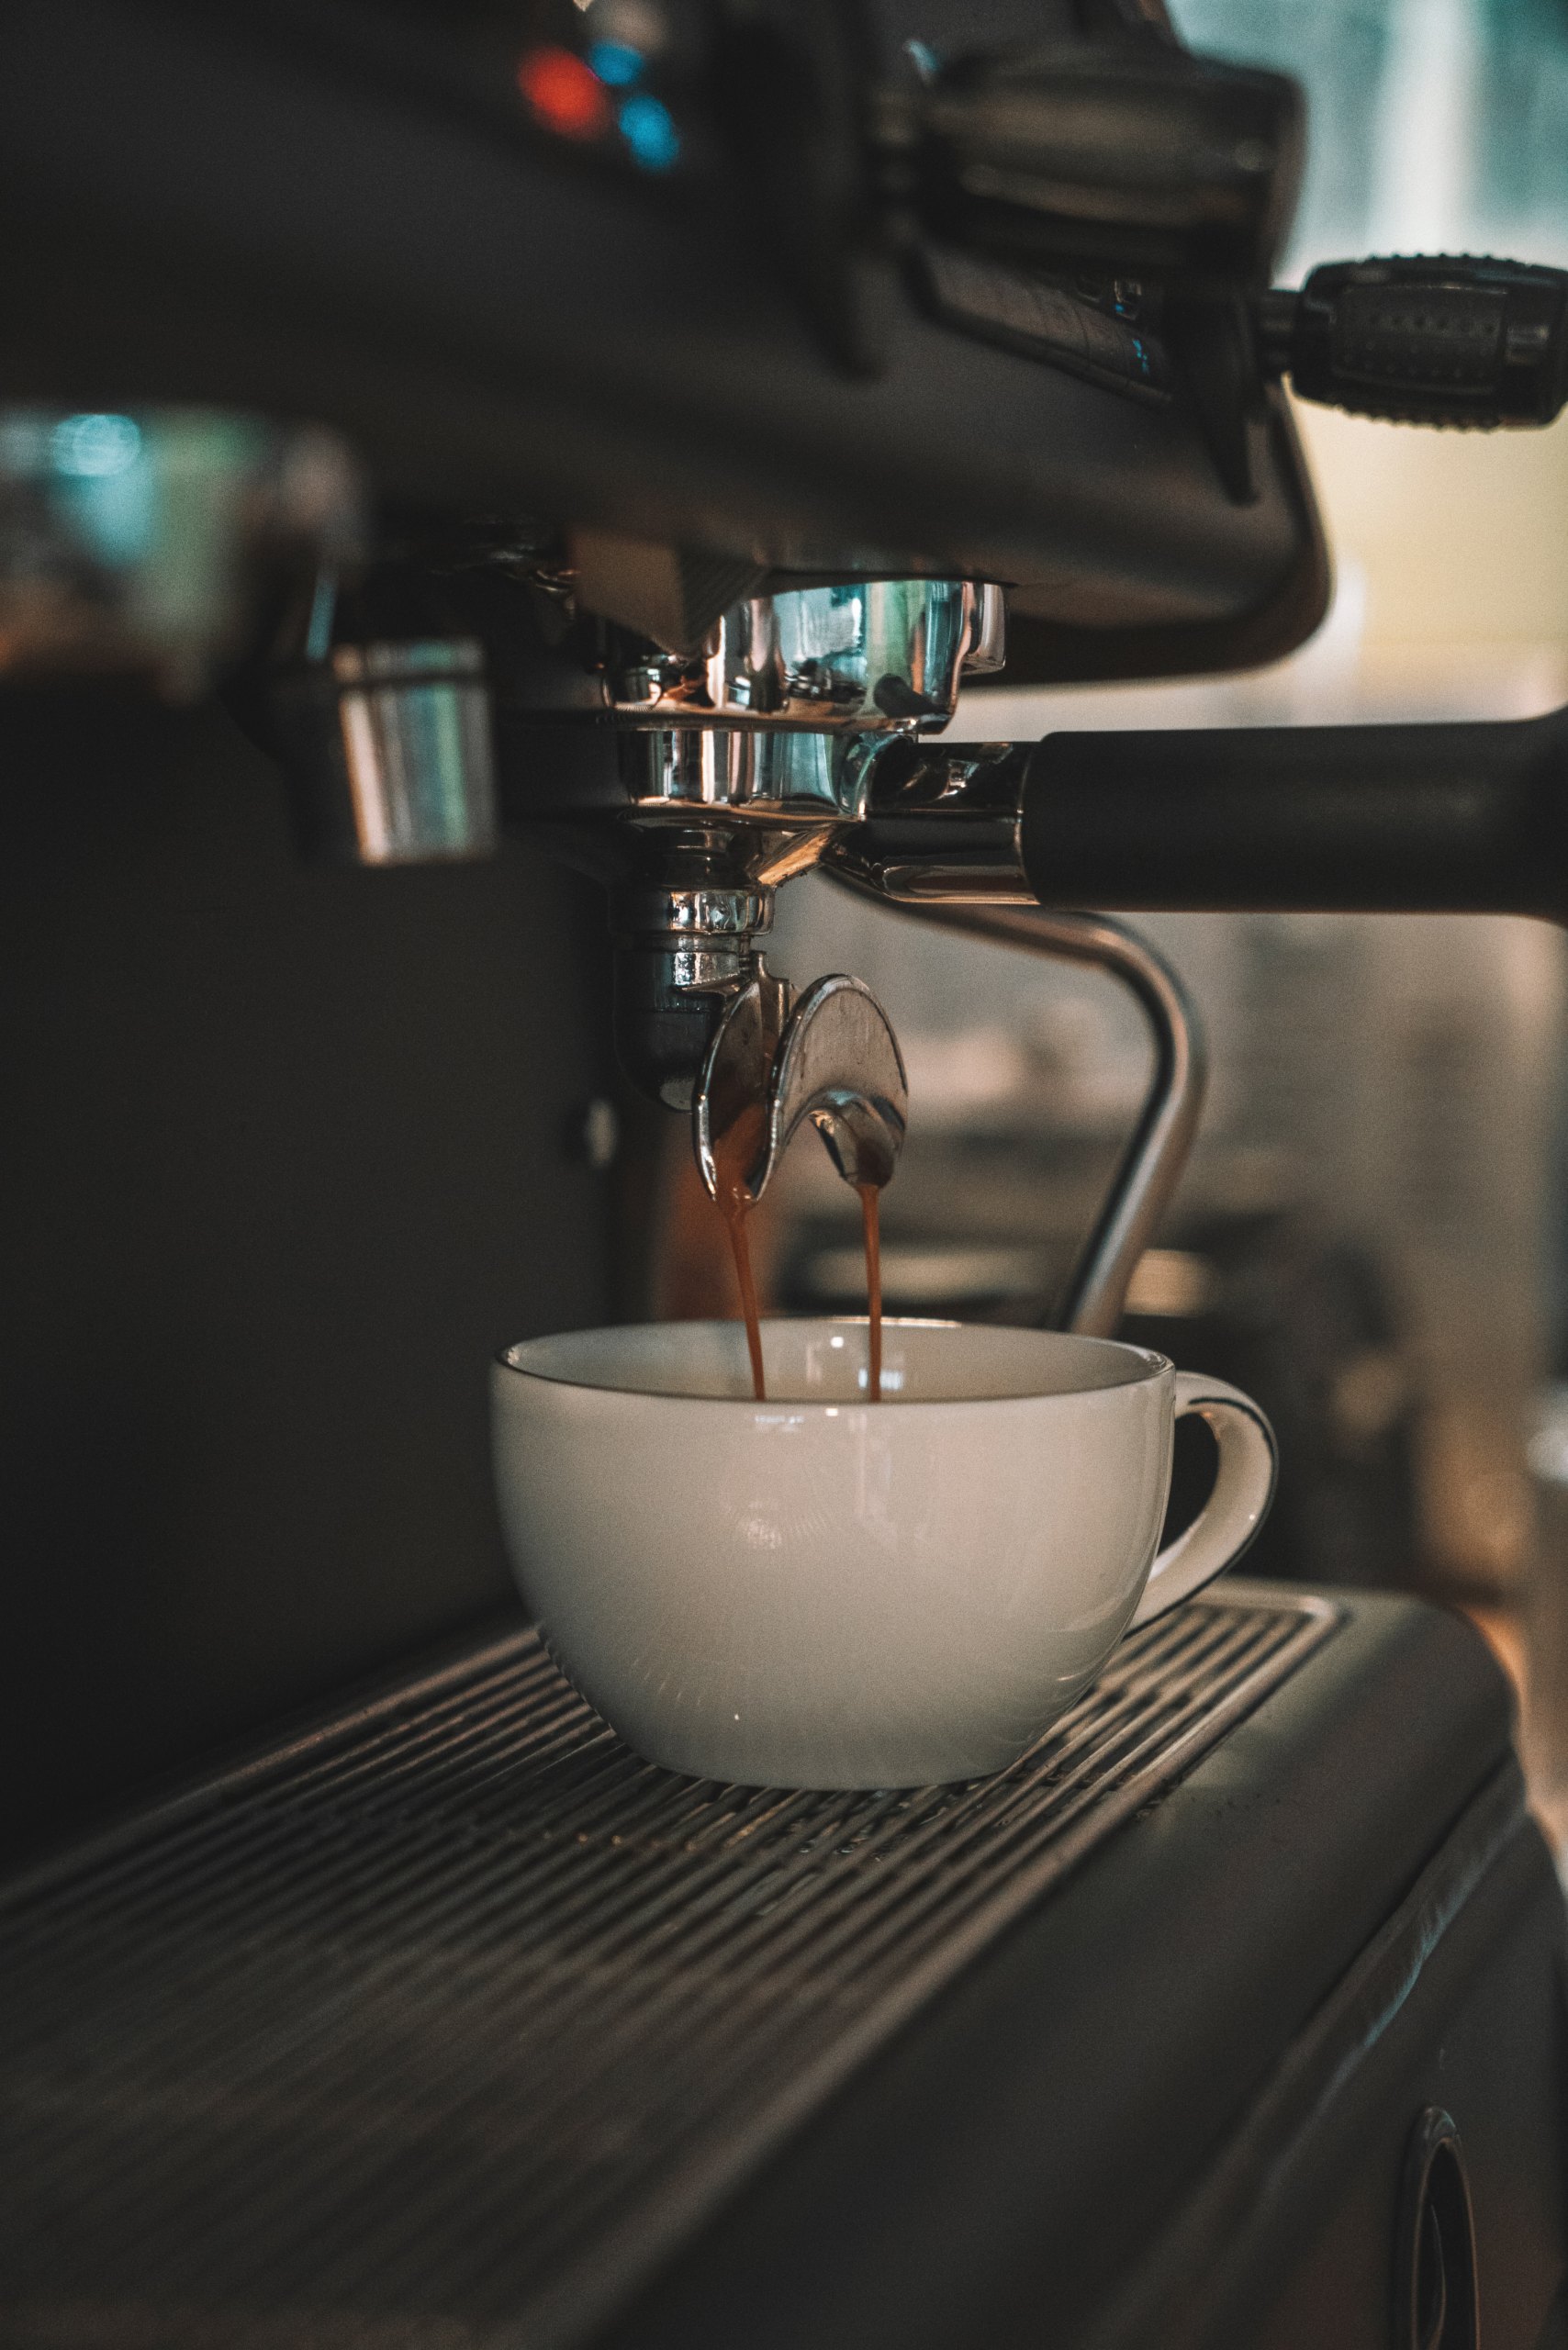 https://lavaive.com/wp-content/uploads/2022/03/maquina-de-cafe-espresso-scaled.jpg